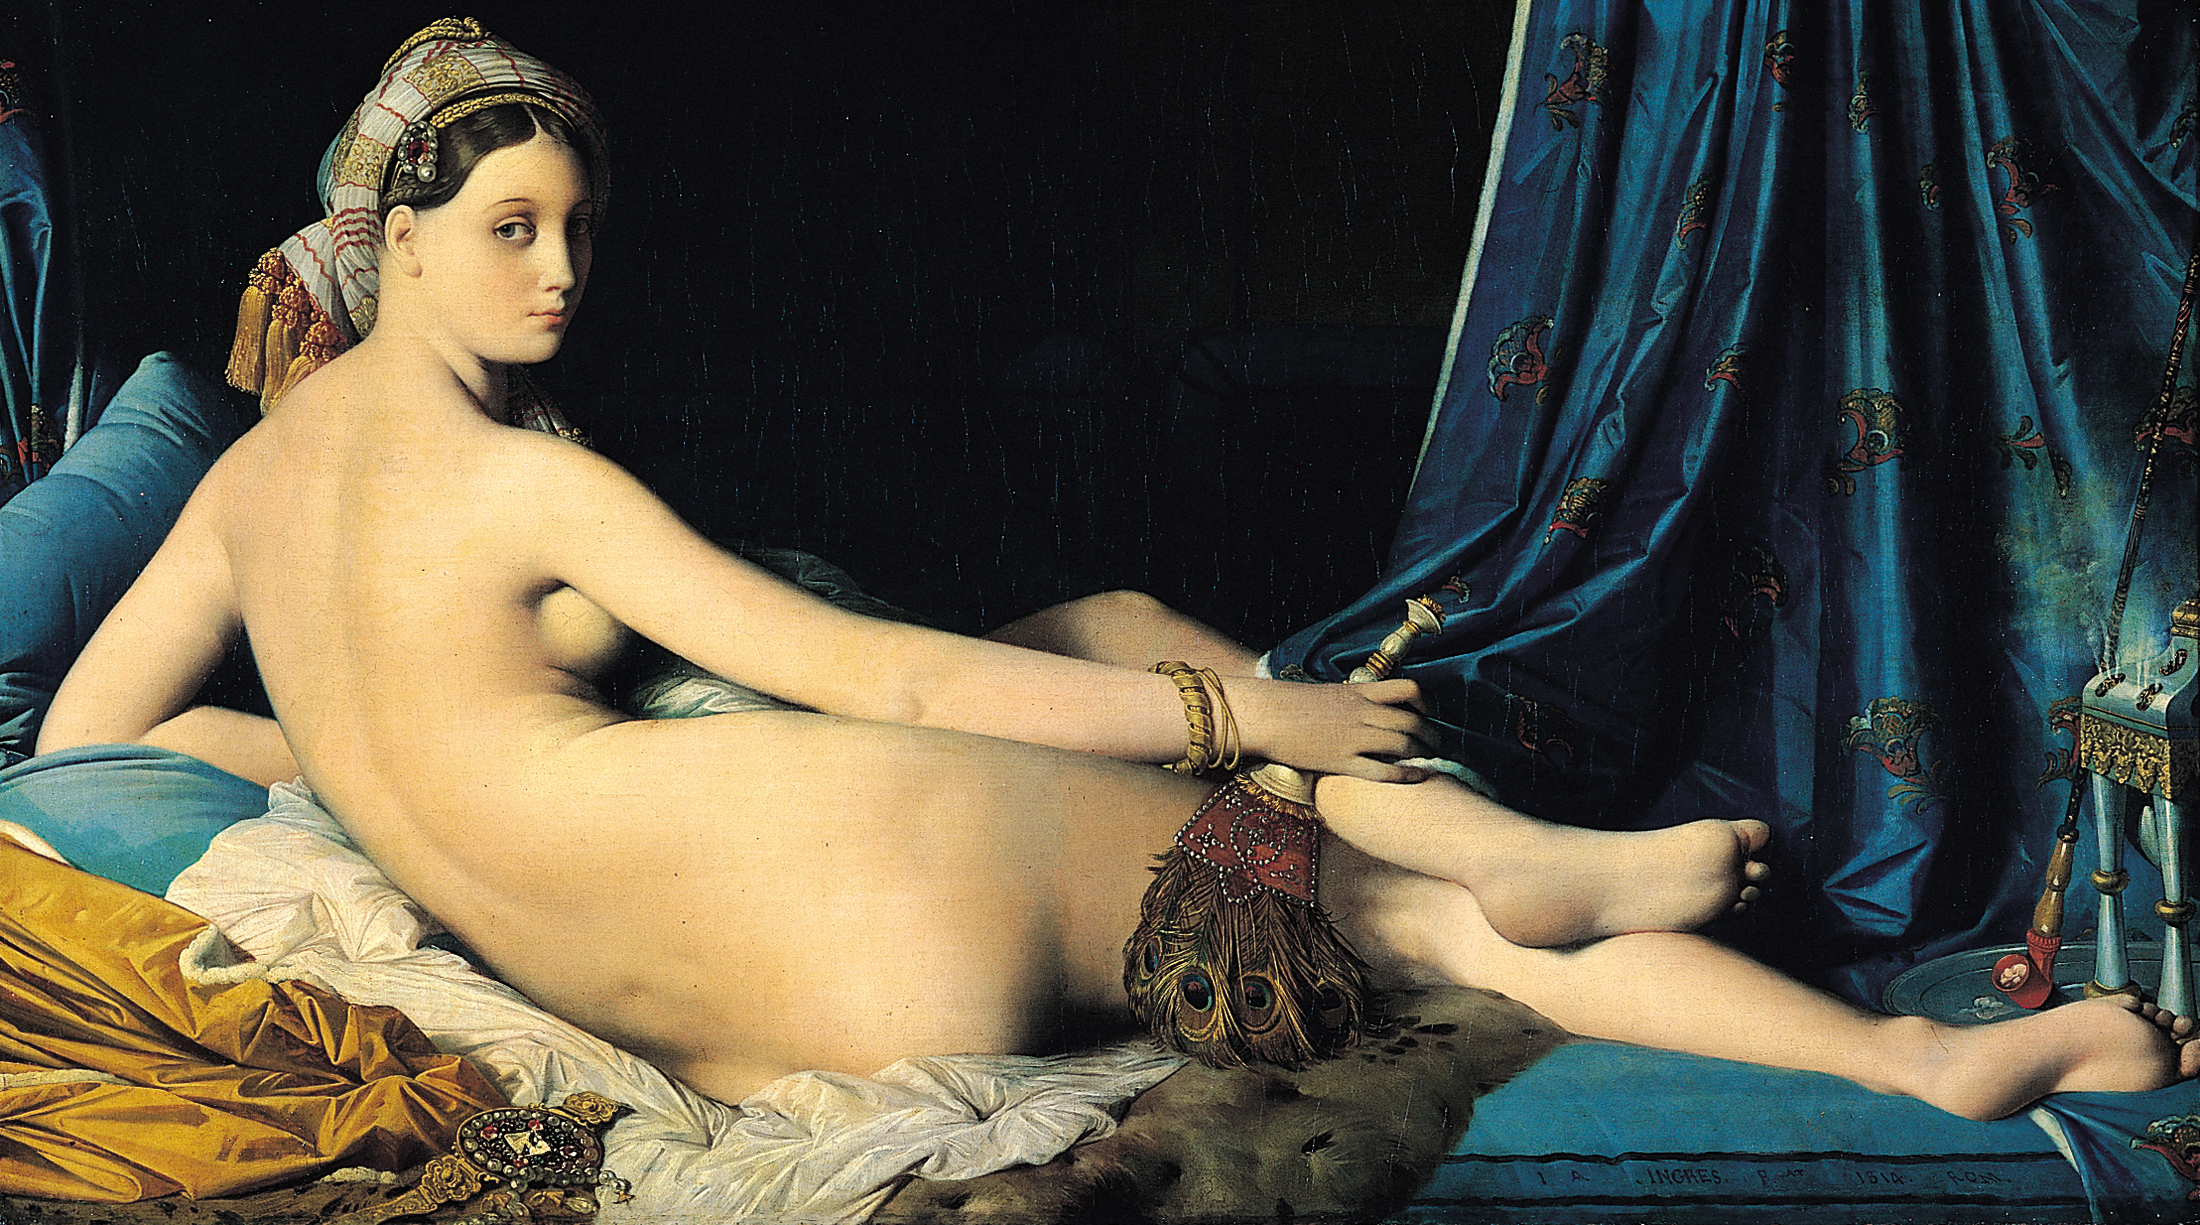 大宮女 by Jean-Auguste-Dominique Ingres - 1814 - 88.9 × 162.56 釐米 